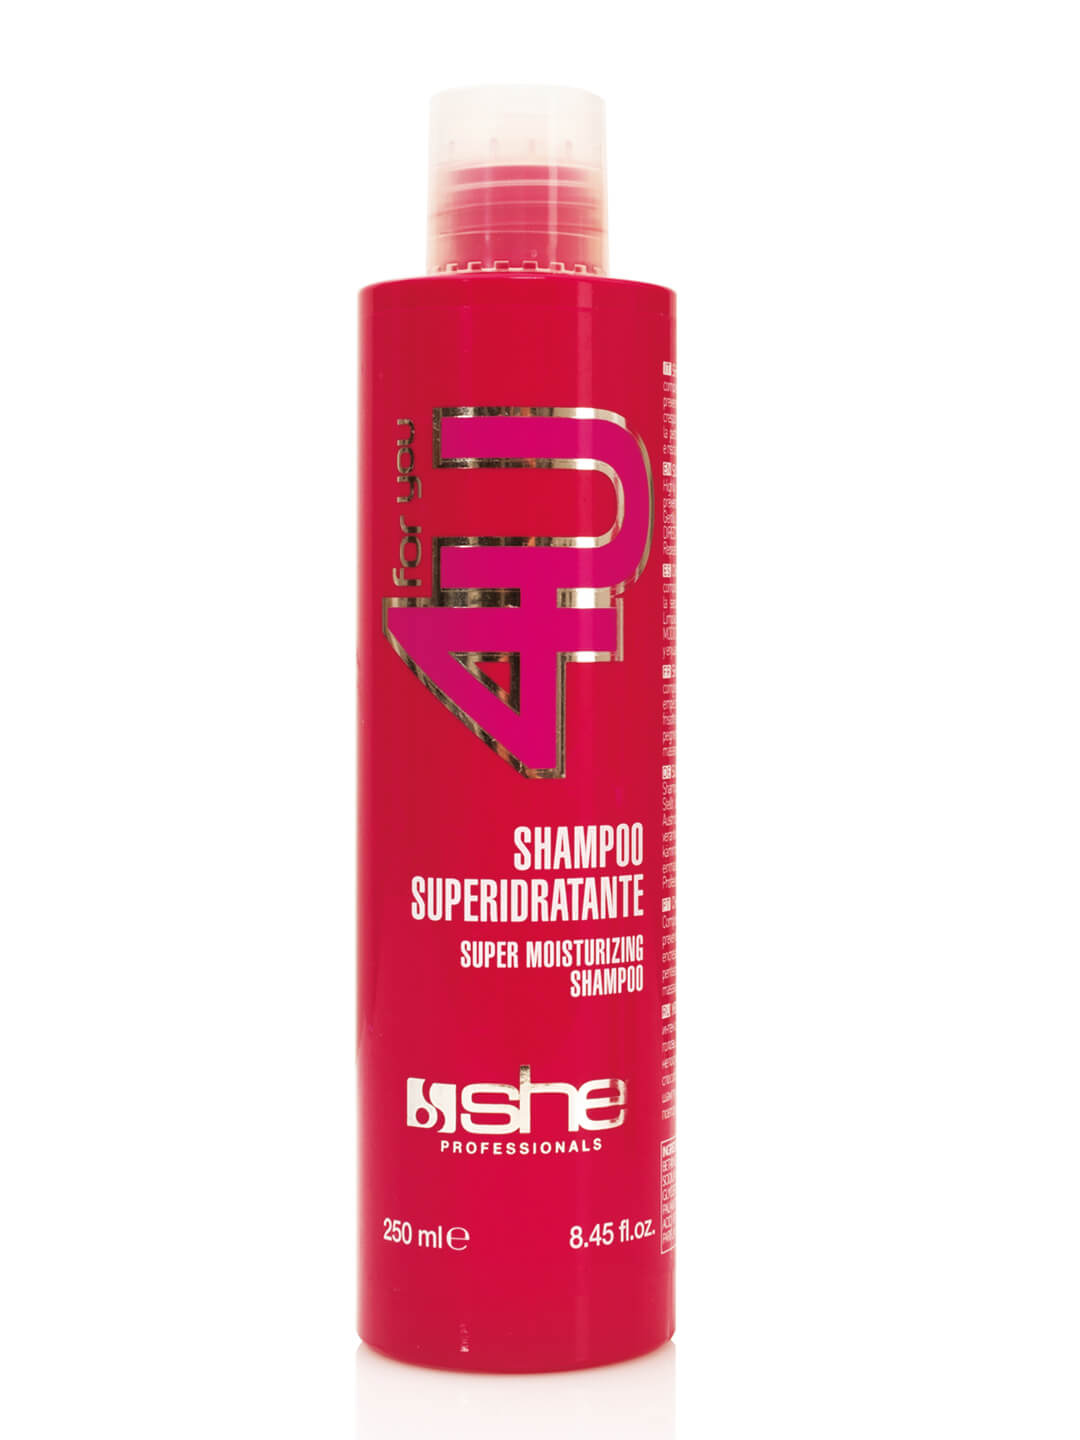 Extensions Shampoo 250 ml 4U shampoo variant detail image - 9e36821171209e3d8d114a3ec2ad2c5f27ac407ab55d58f4d8027fabdd66de9c